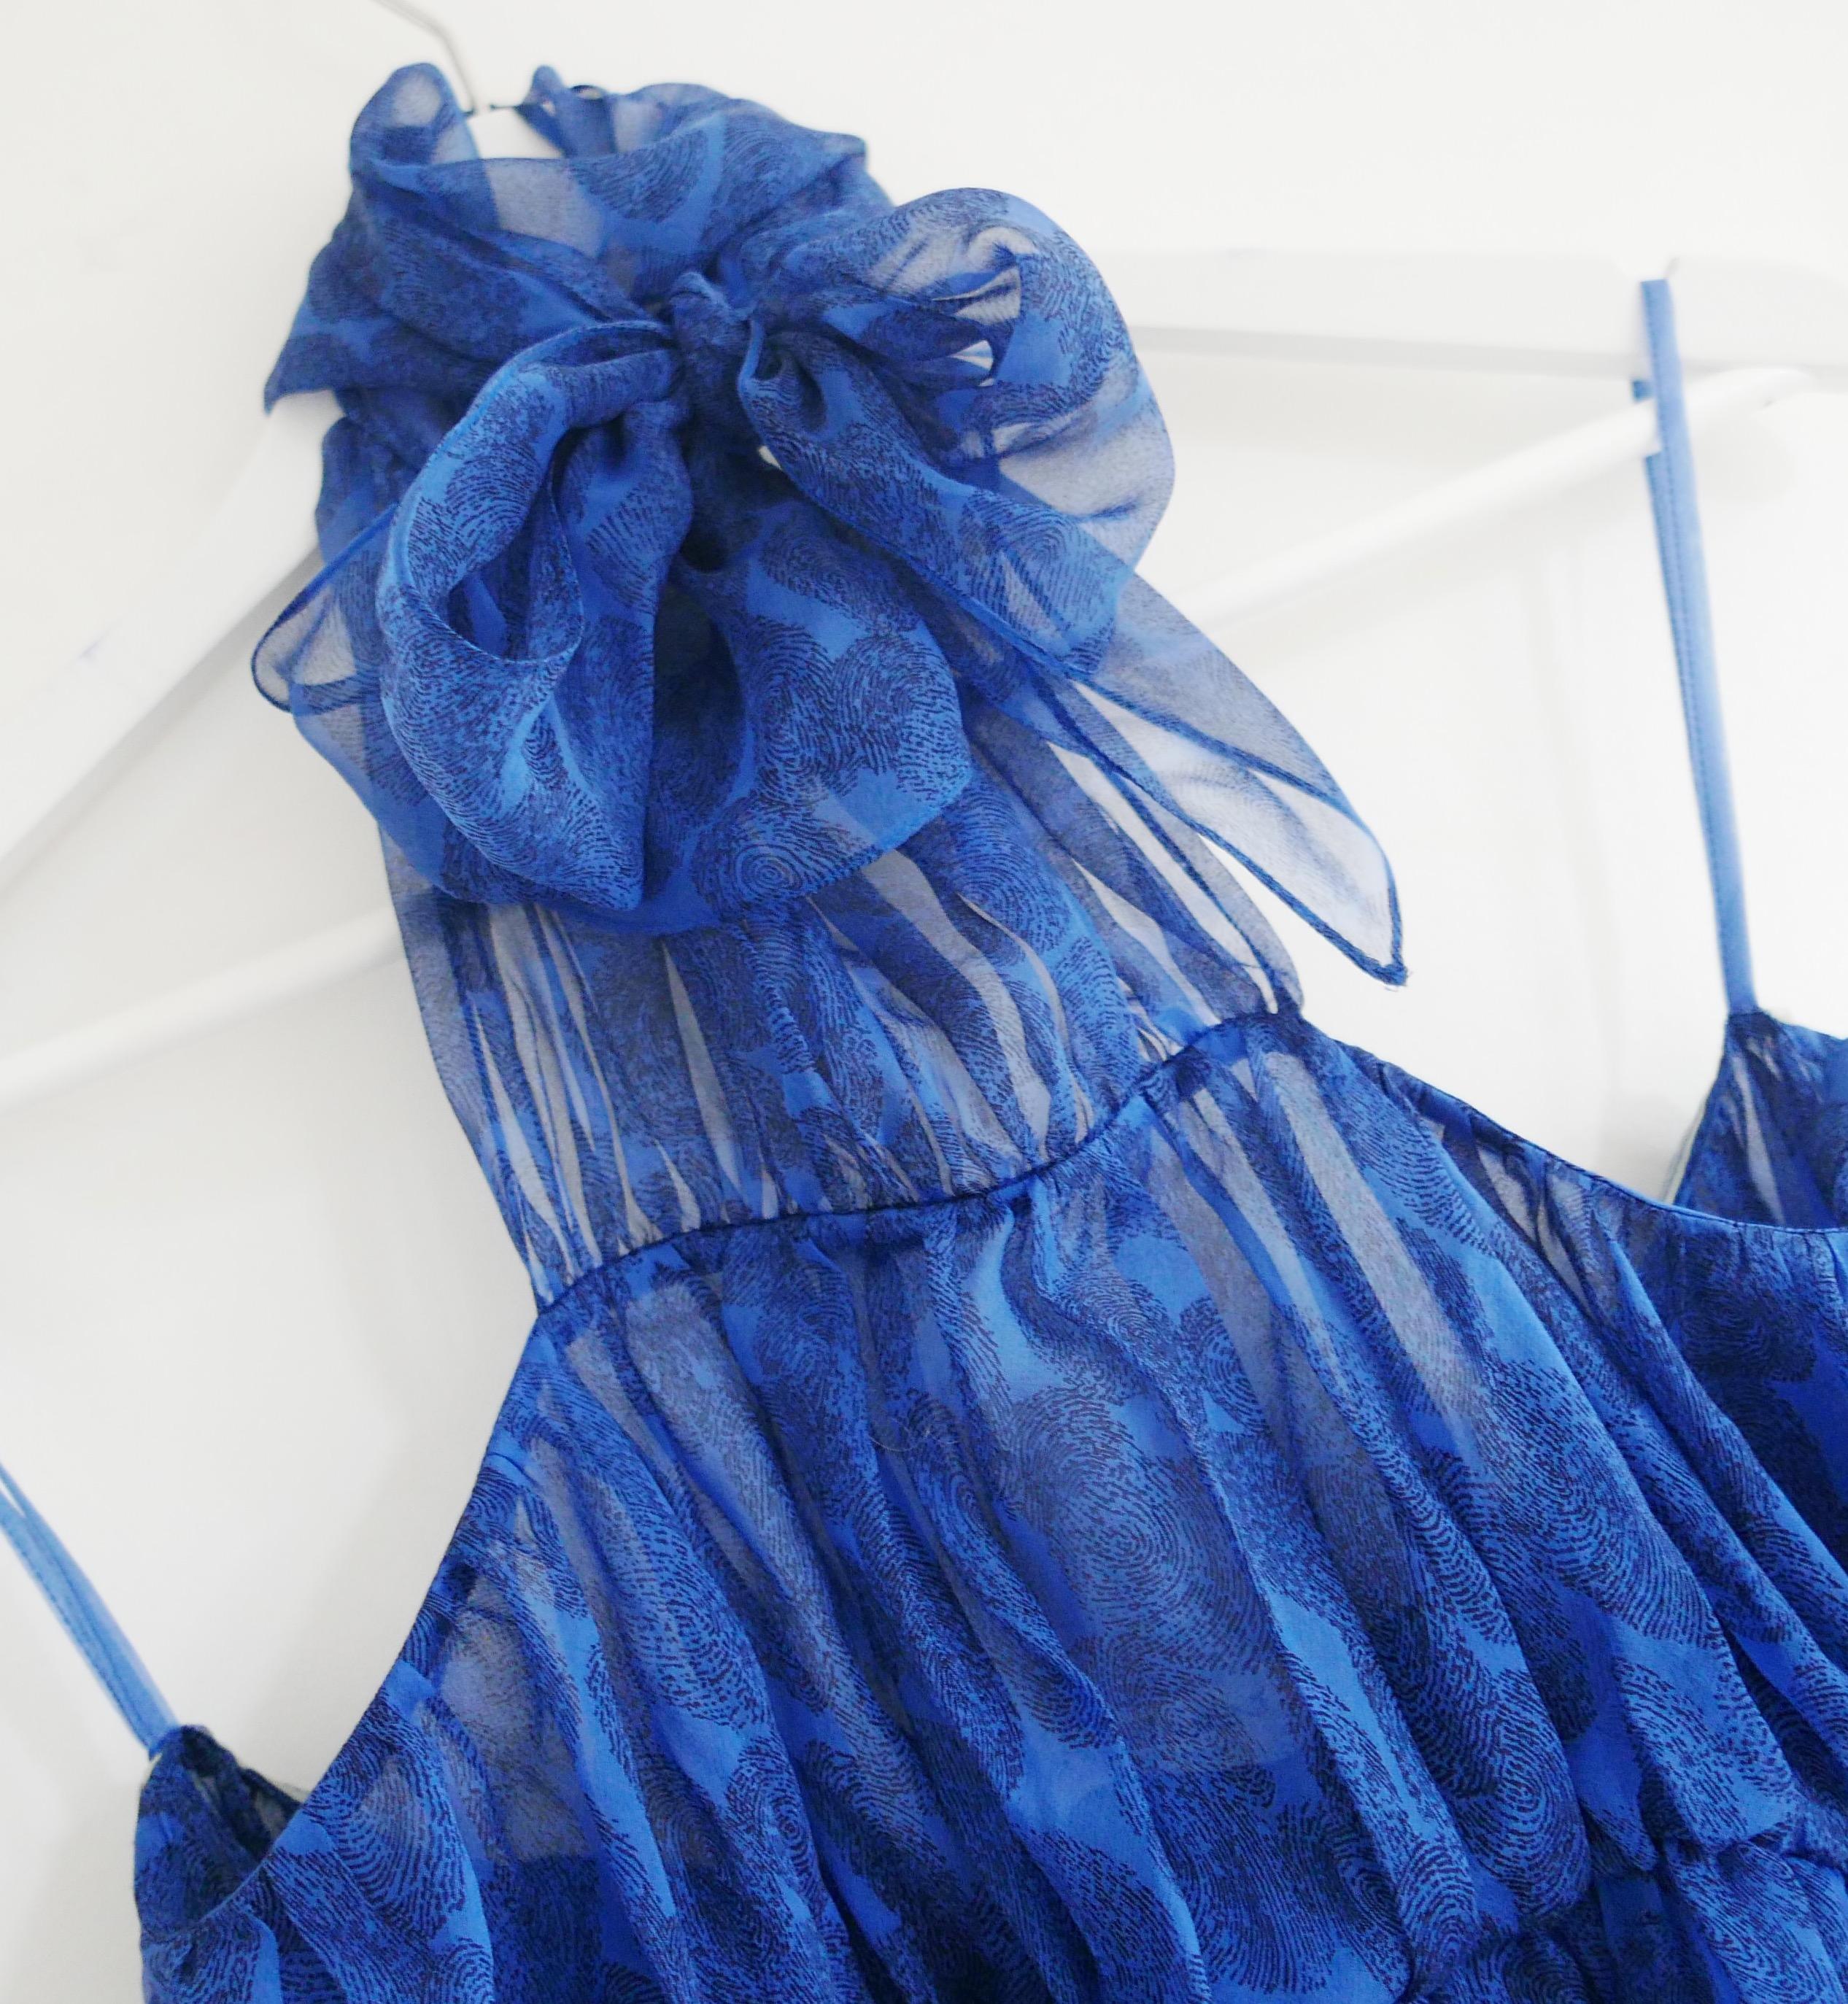 Superbe blouse d'archive Yves Saint Laurent de la Collectional Printemps 2011 de Stefano Pilati. Non portés. Confectionnée en soie bleue transparente à motifs d'empreintes digitales, elle présente une encolure licou haute et des fronces. Buste et